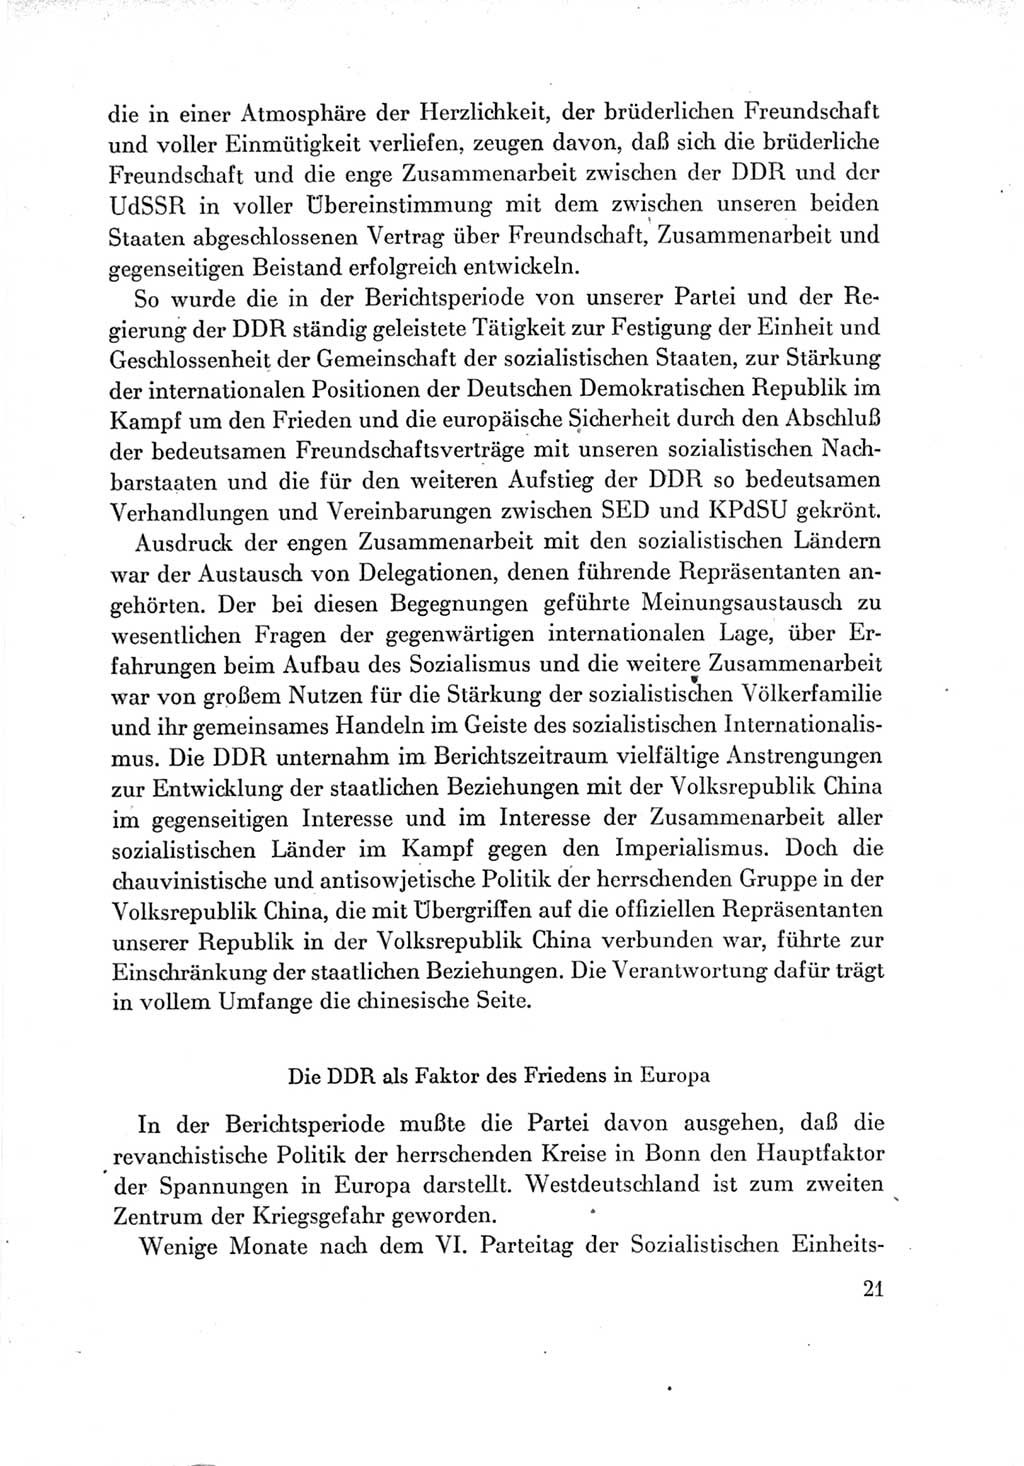 Protokoll der Verhandlungen des Ⅶ. Parteitages der Sozialistischen Einheitspartei Deutschlands (SED) [Deutsche Demokratische Republik (DDR)] 1967, Band Ⅳ, Seite 21 (Prot. Verh. Ⅶ. PT SED DDR 1967, Bd. Ⅳ, S. 21)